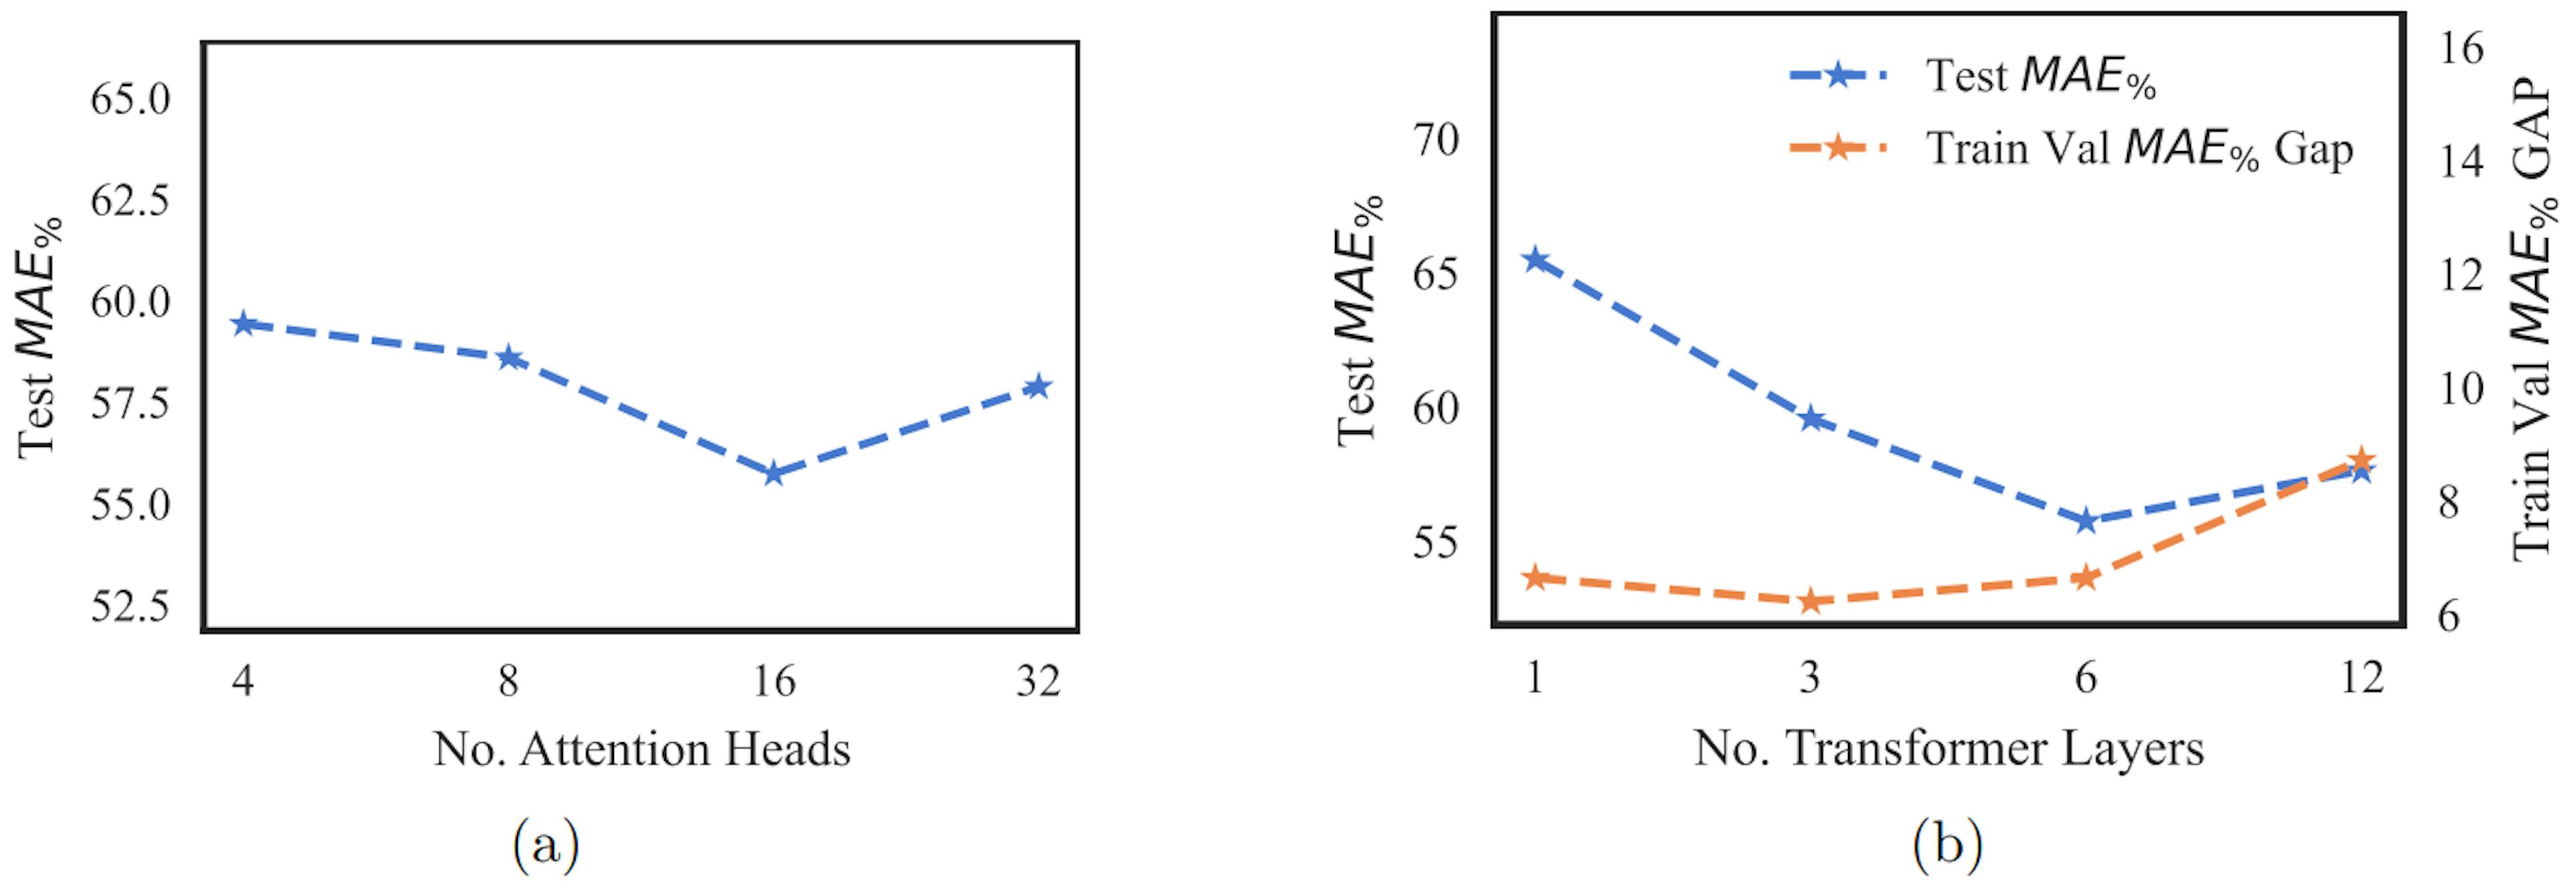 Hình 2: Hình một biểu đồ kiểm tra MAE% so với số lượng đầu chú ý. Hình b vẽ sơ đồ kiểm tra khoảng cách MAE% và giá trị tàu lửa MAE% so với số lớp máy biến áp. MAE% được tính như trong Công thức 4.